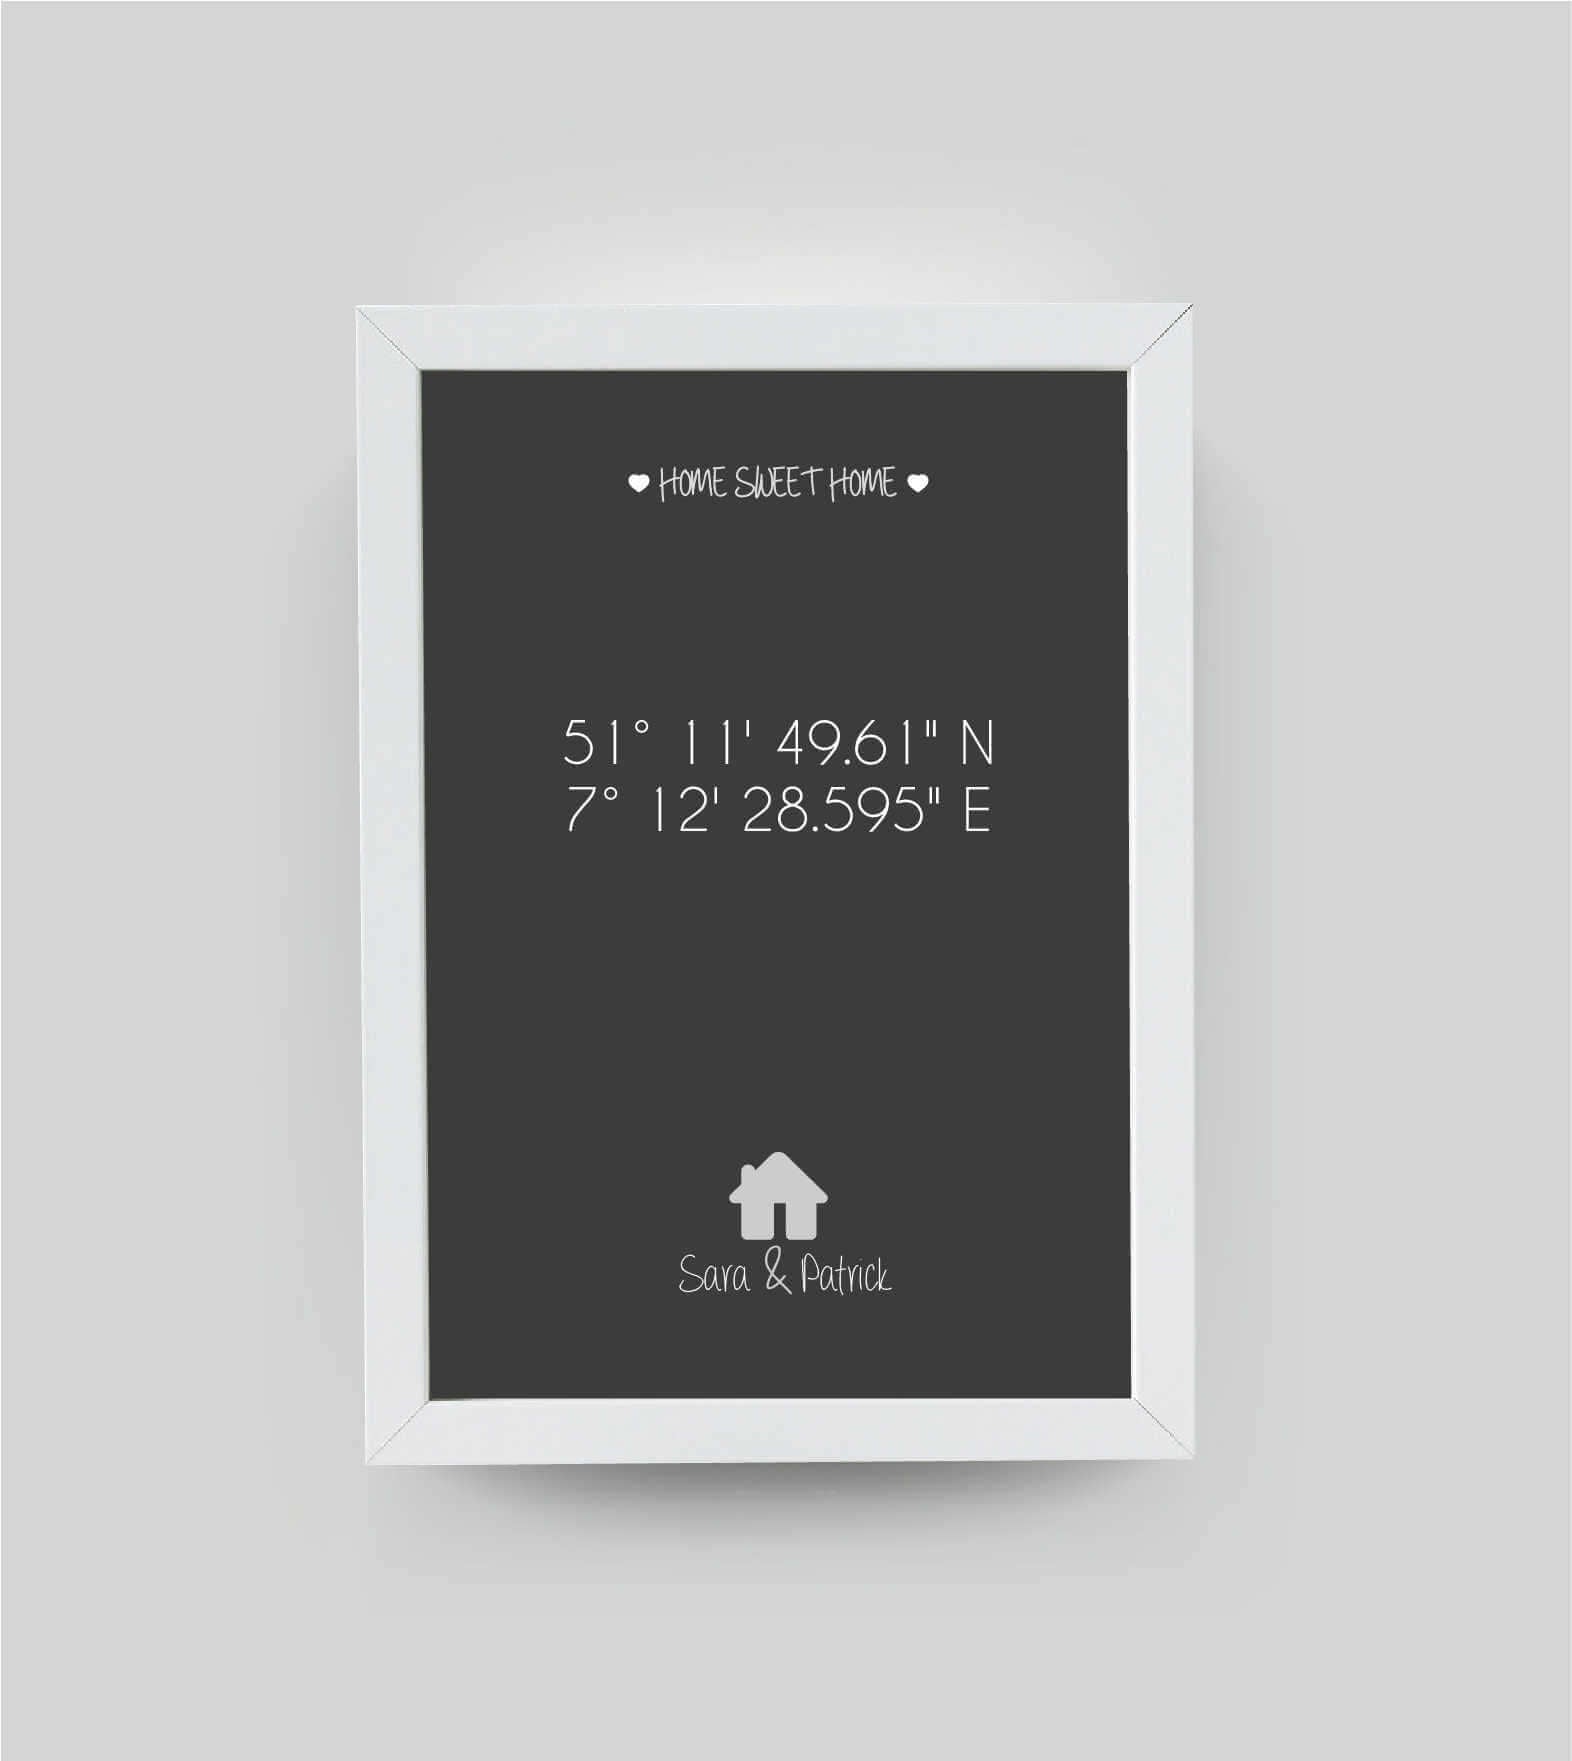 Personalisiertes Bild "HOME SWEET HOME HAUS" in schwarz/anthrazit, DIN A4, mit Rahmen weiß 21x30cm, ohne Passepartout